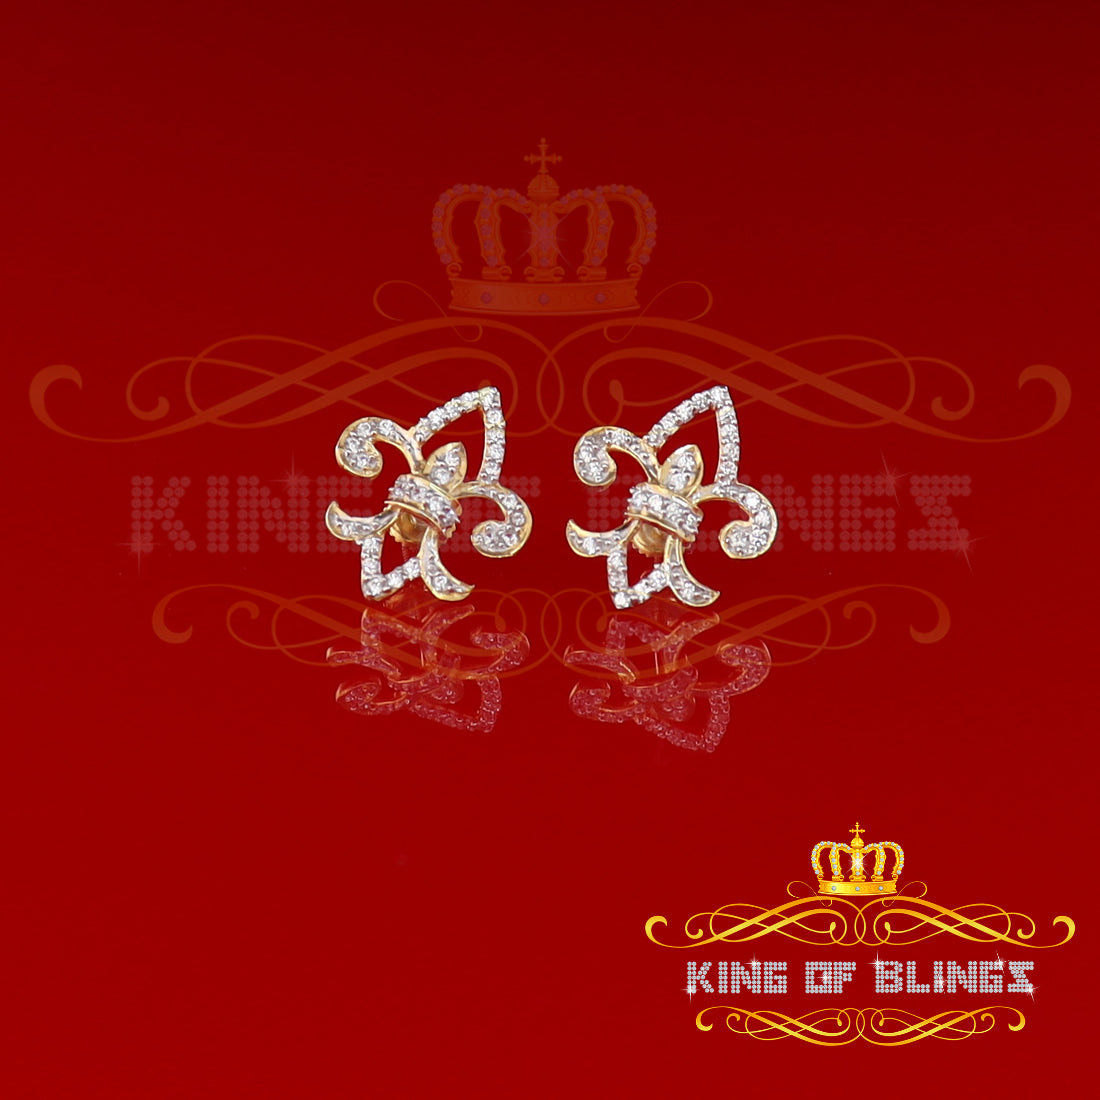 King of Bling's 925 Yellow Silver 0.60ct Cubic Zirconia Fleur de Lis Screw Back Women's Earrings KING OF BLINGS